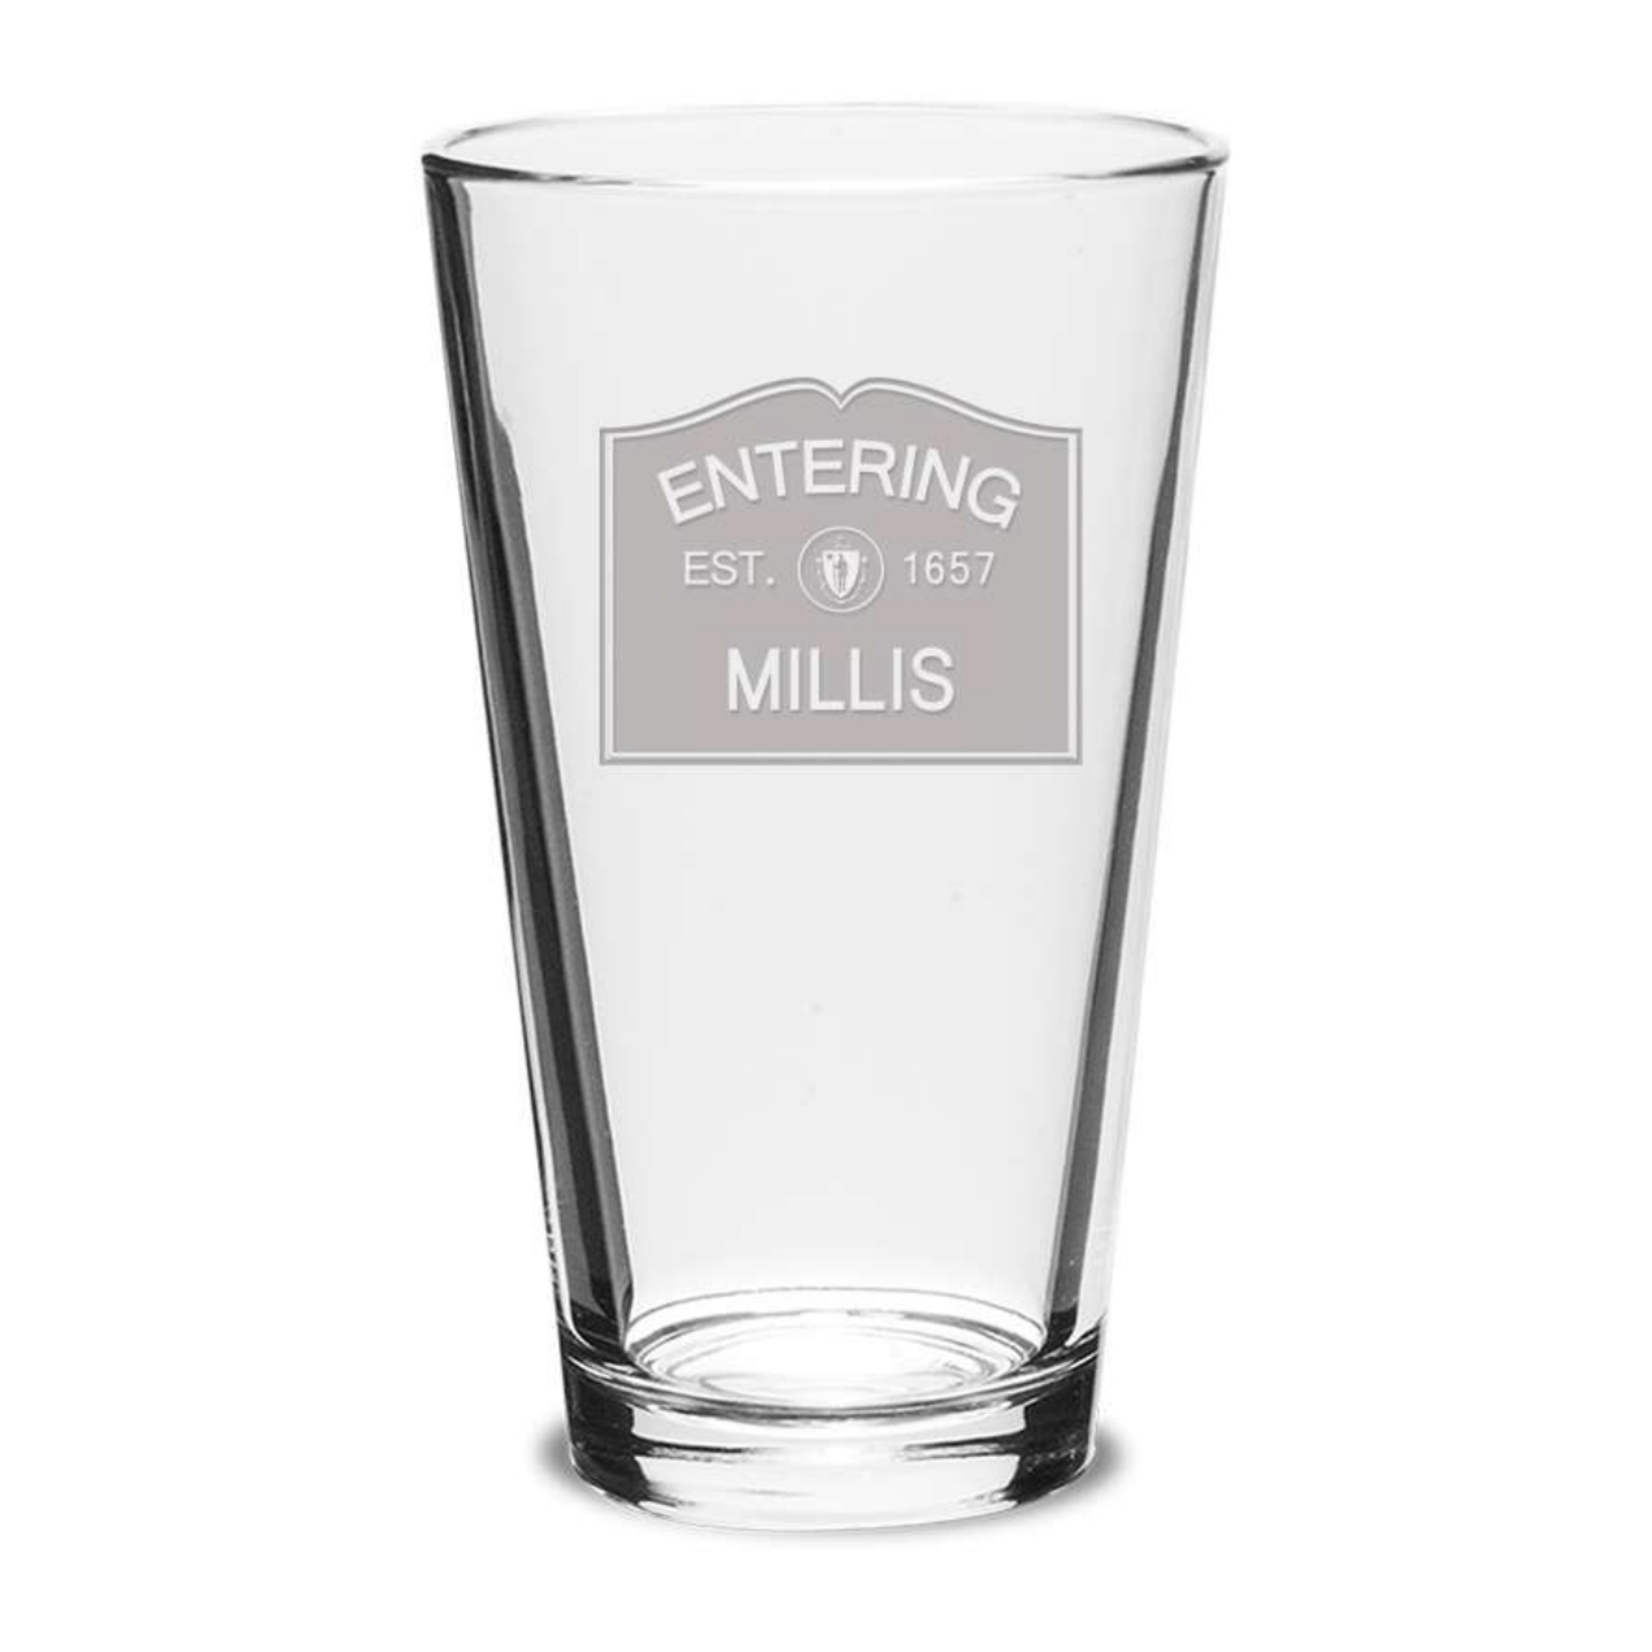 Millis Glassware - Entering Millis EST. 1657 Pint Glass